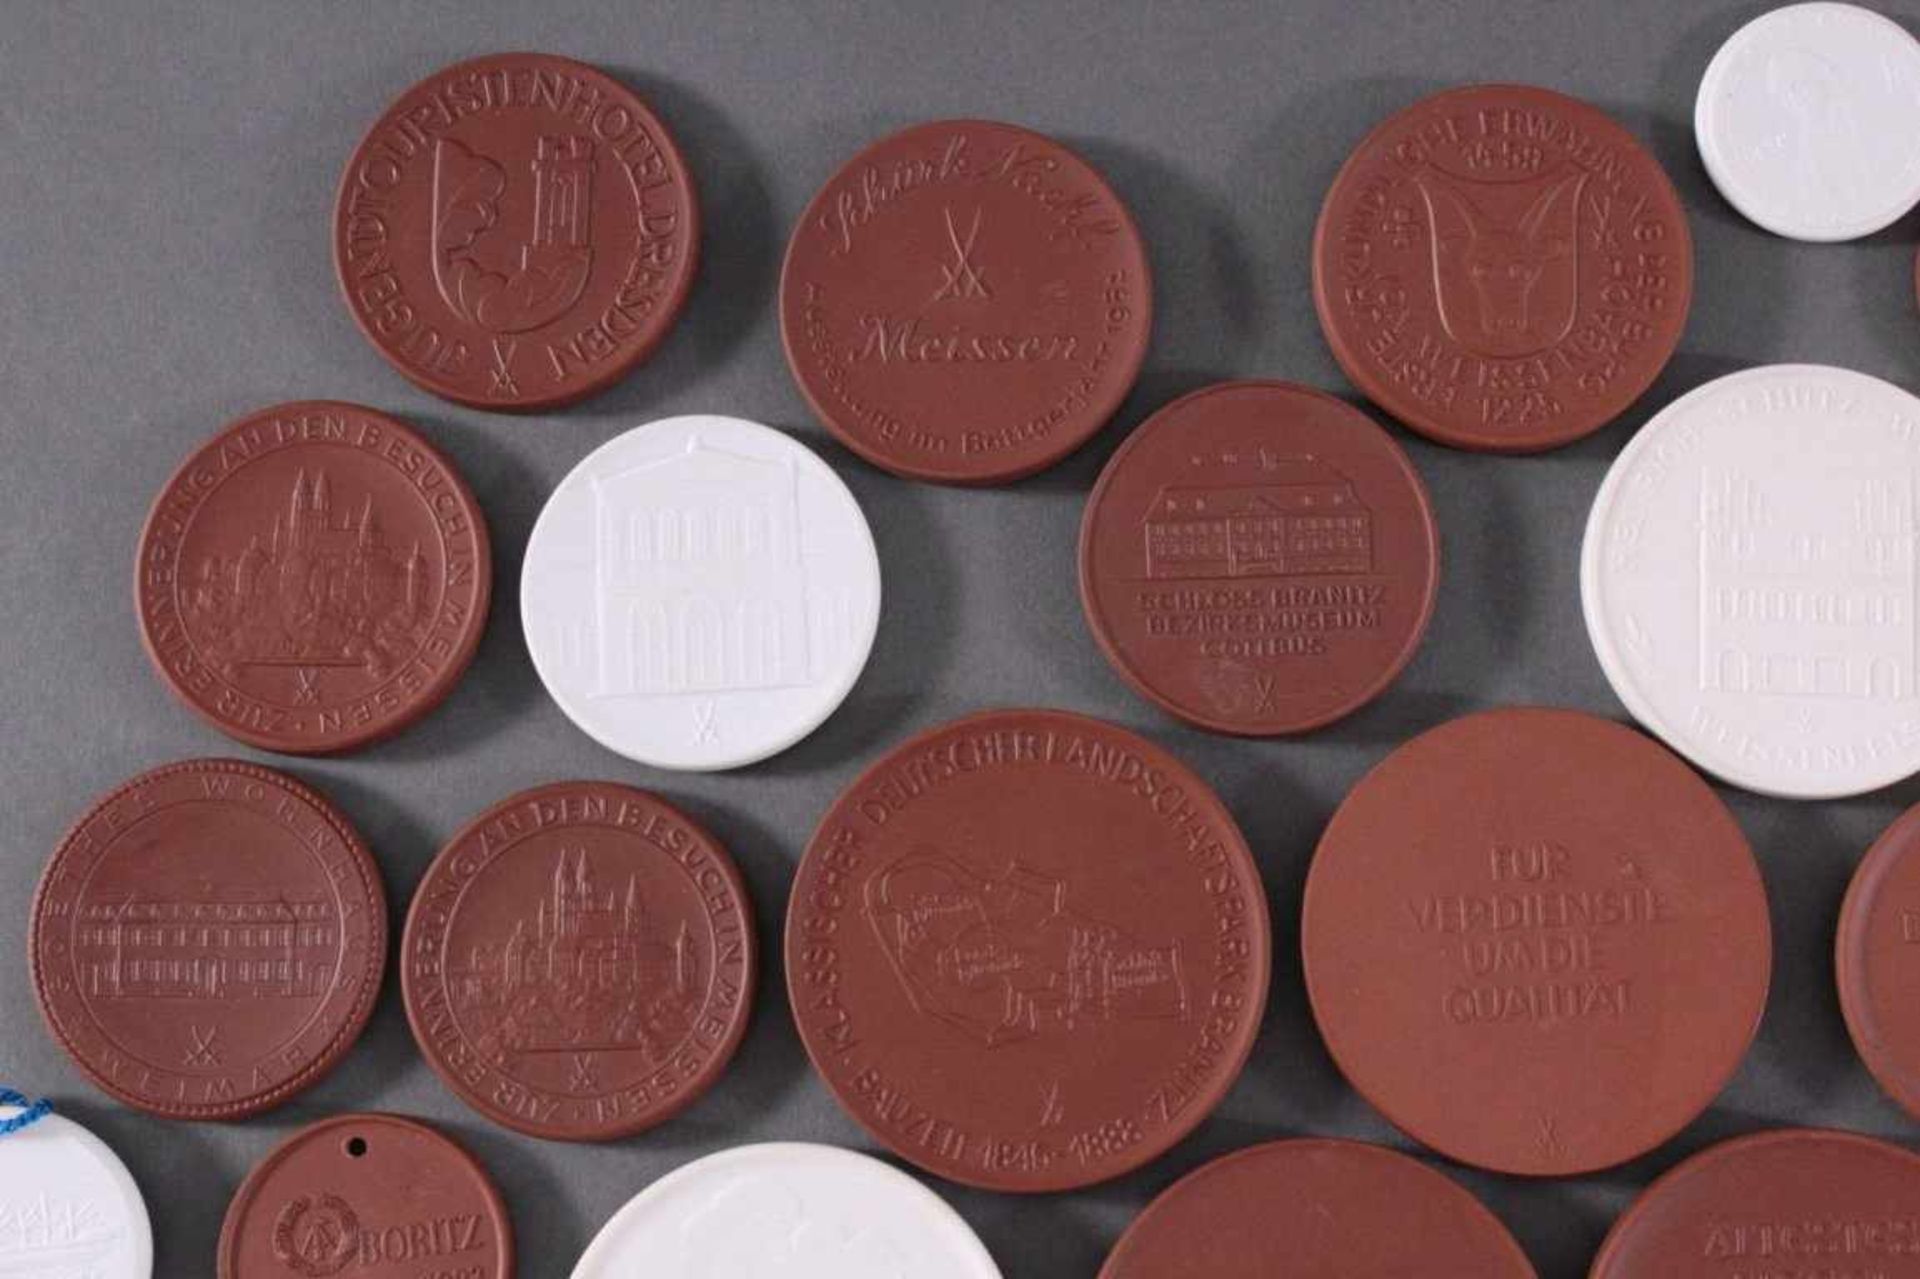 Meissen Porzellan- und Böttger Steinzeug Medaillen33 Stück. Durchmesser der Medaillen von ca. 4 cm - Bild 5 aus 6